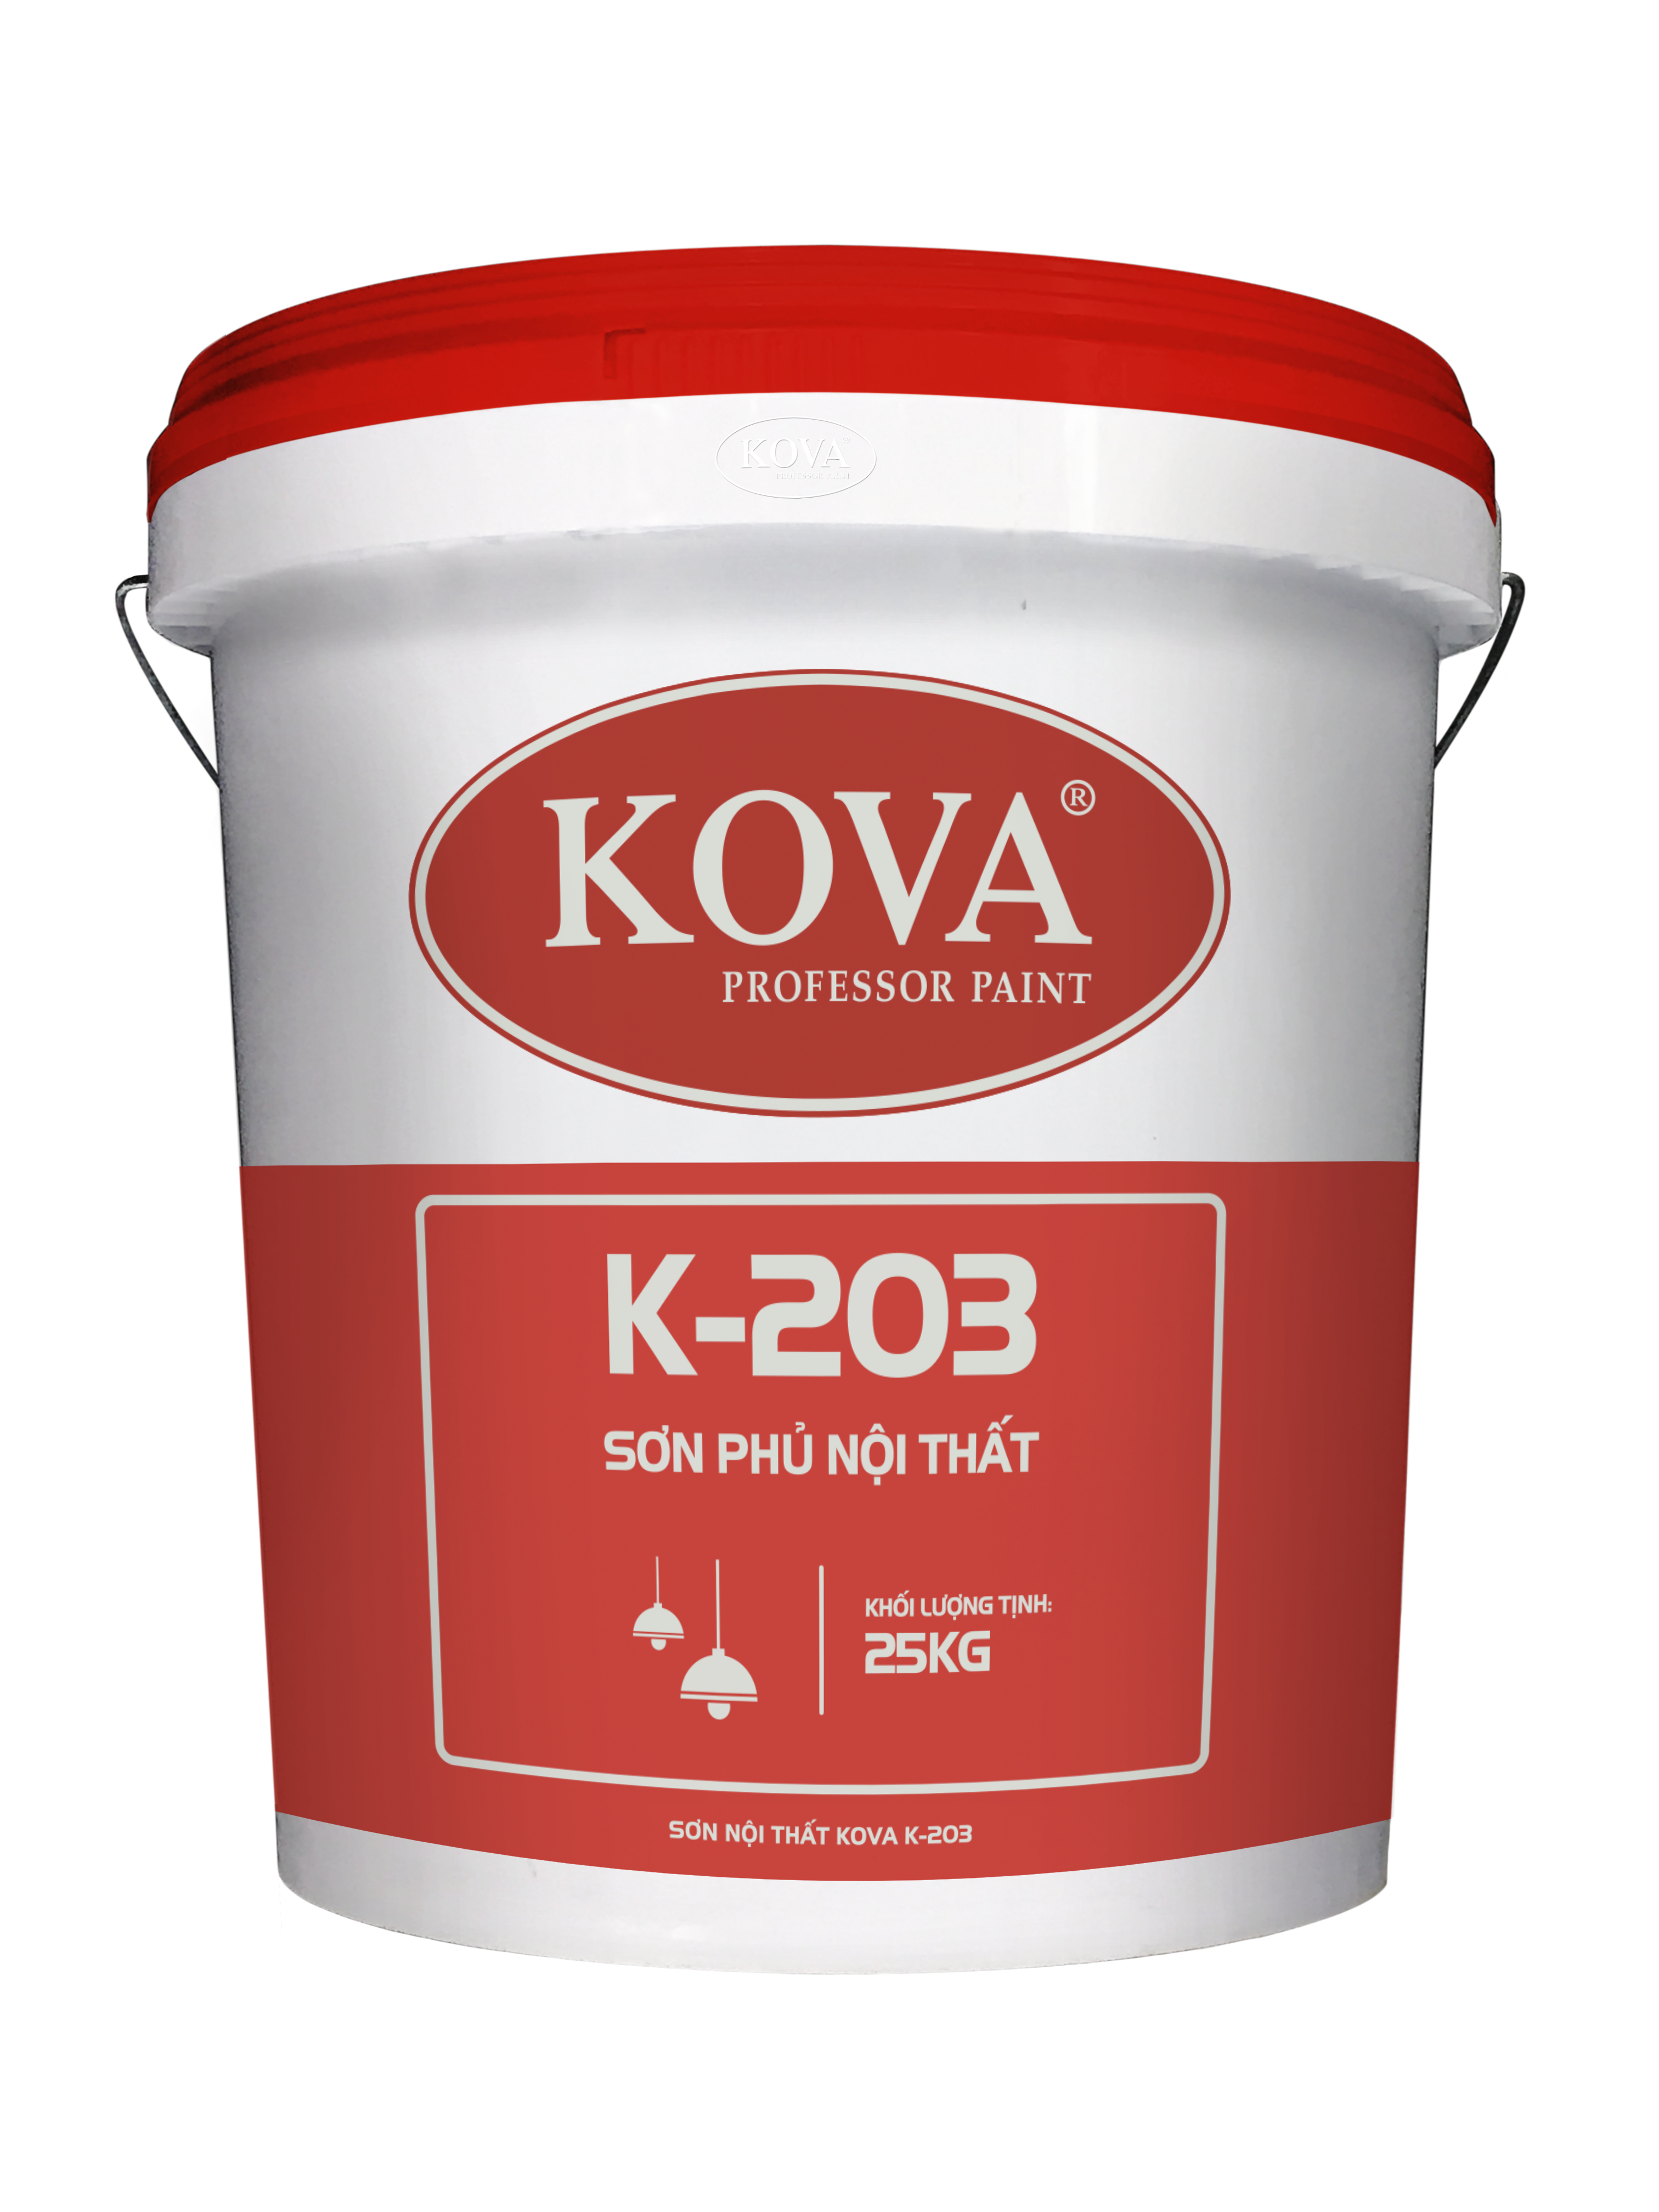 Sơn Nội Thất KOVA K-203: Với độ phủ cao và khả năng chống bám bụi cực tốt, sơn nội thất KOVA K-203 là sự lựa chọn tối ưu để bảo vệ và tôn lên sự nổi bật của nội thất. Hãy nhấn vào hình ảnh để tìm hiểu thêm về sản phẩm này.